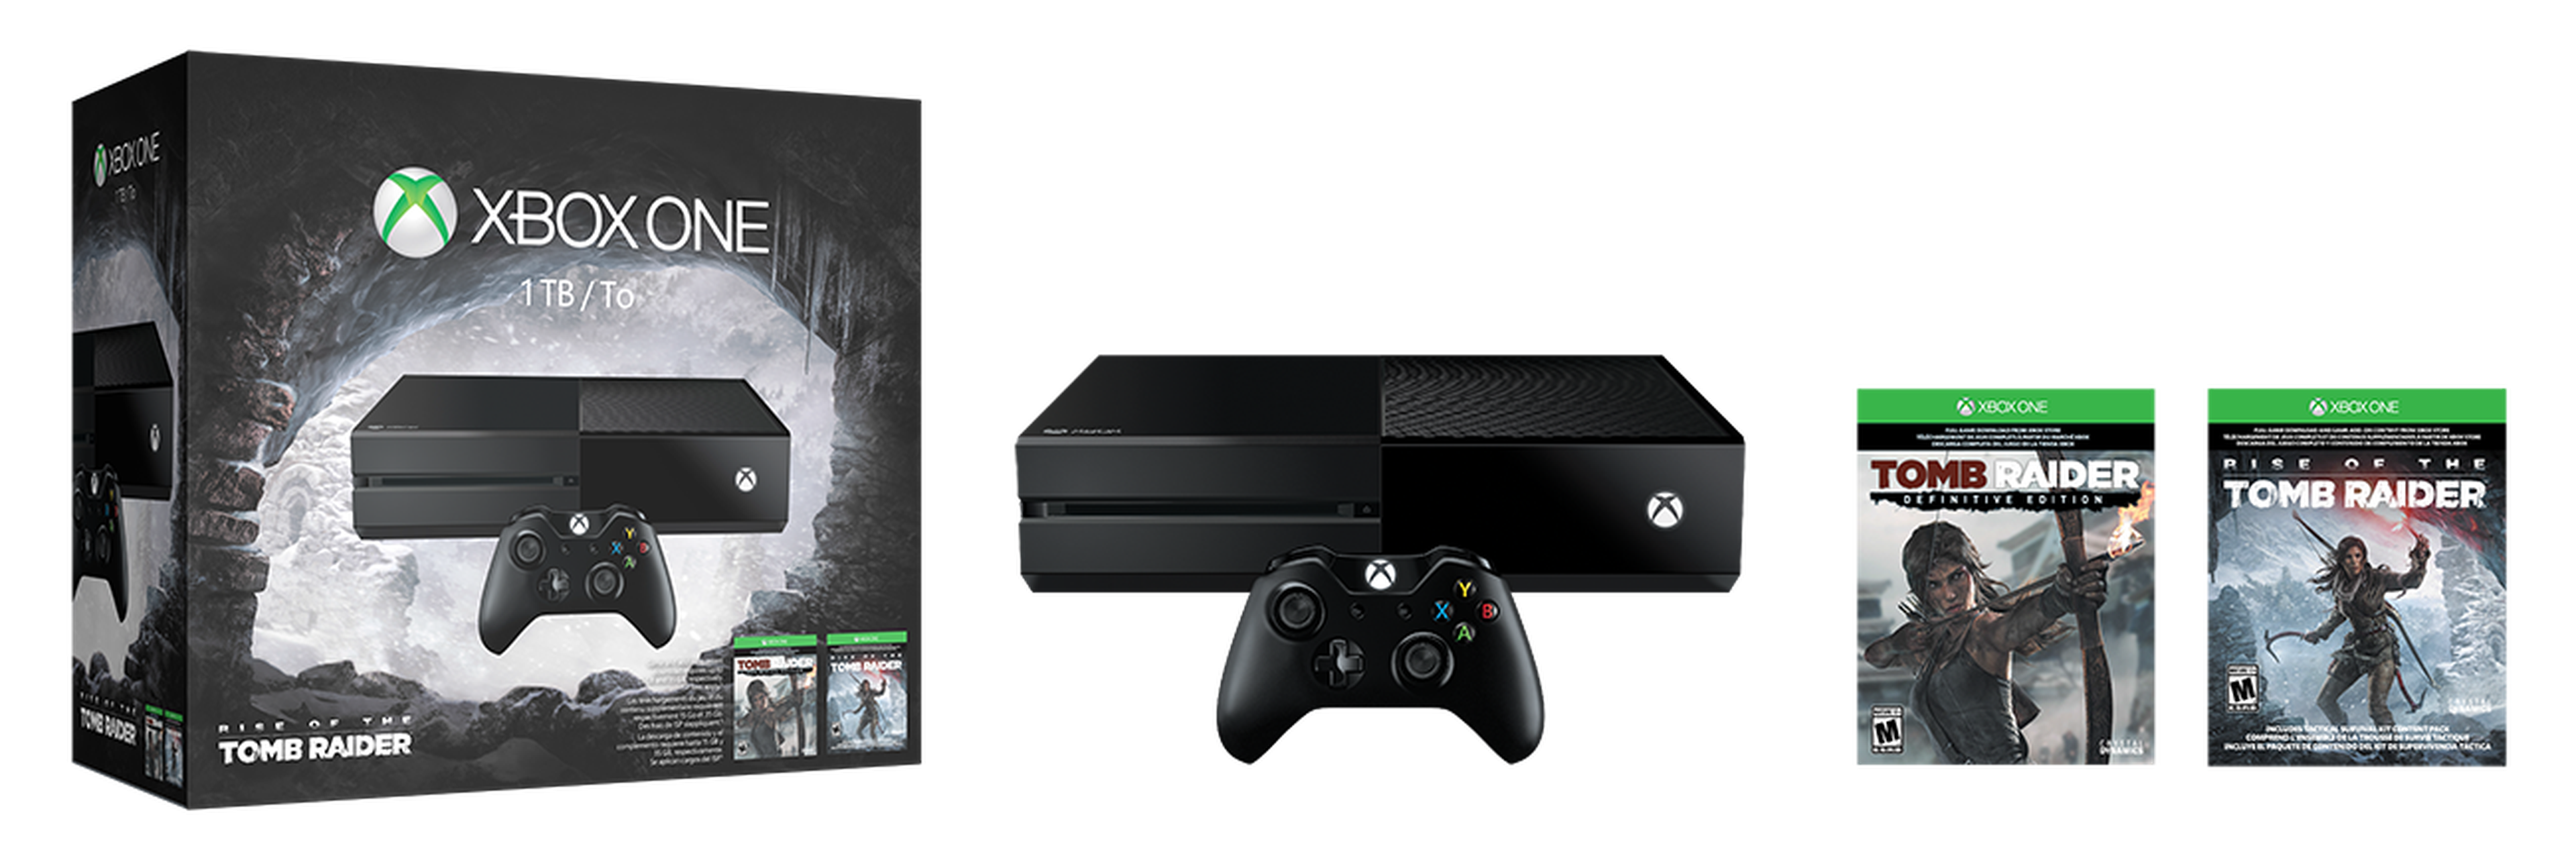 Nuevo pack de Xbox One con Rise of the Tomb Raider